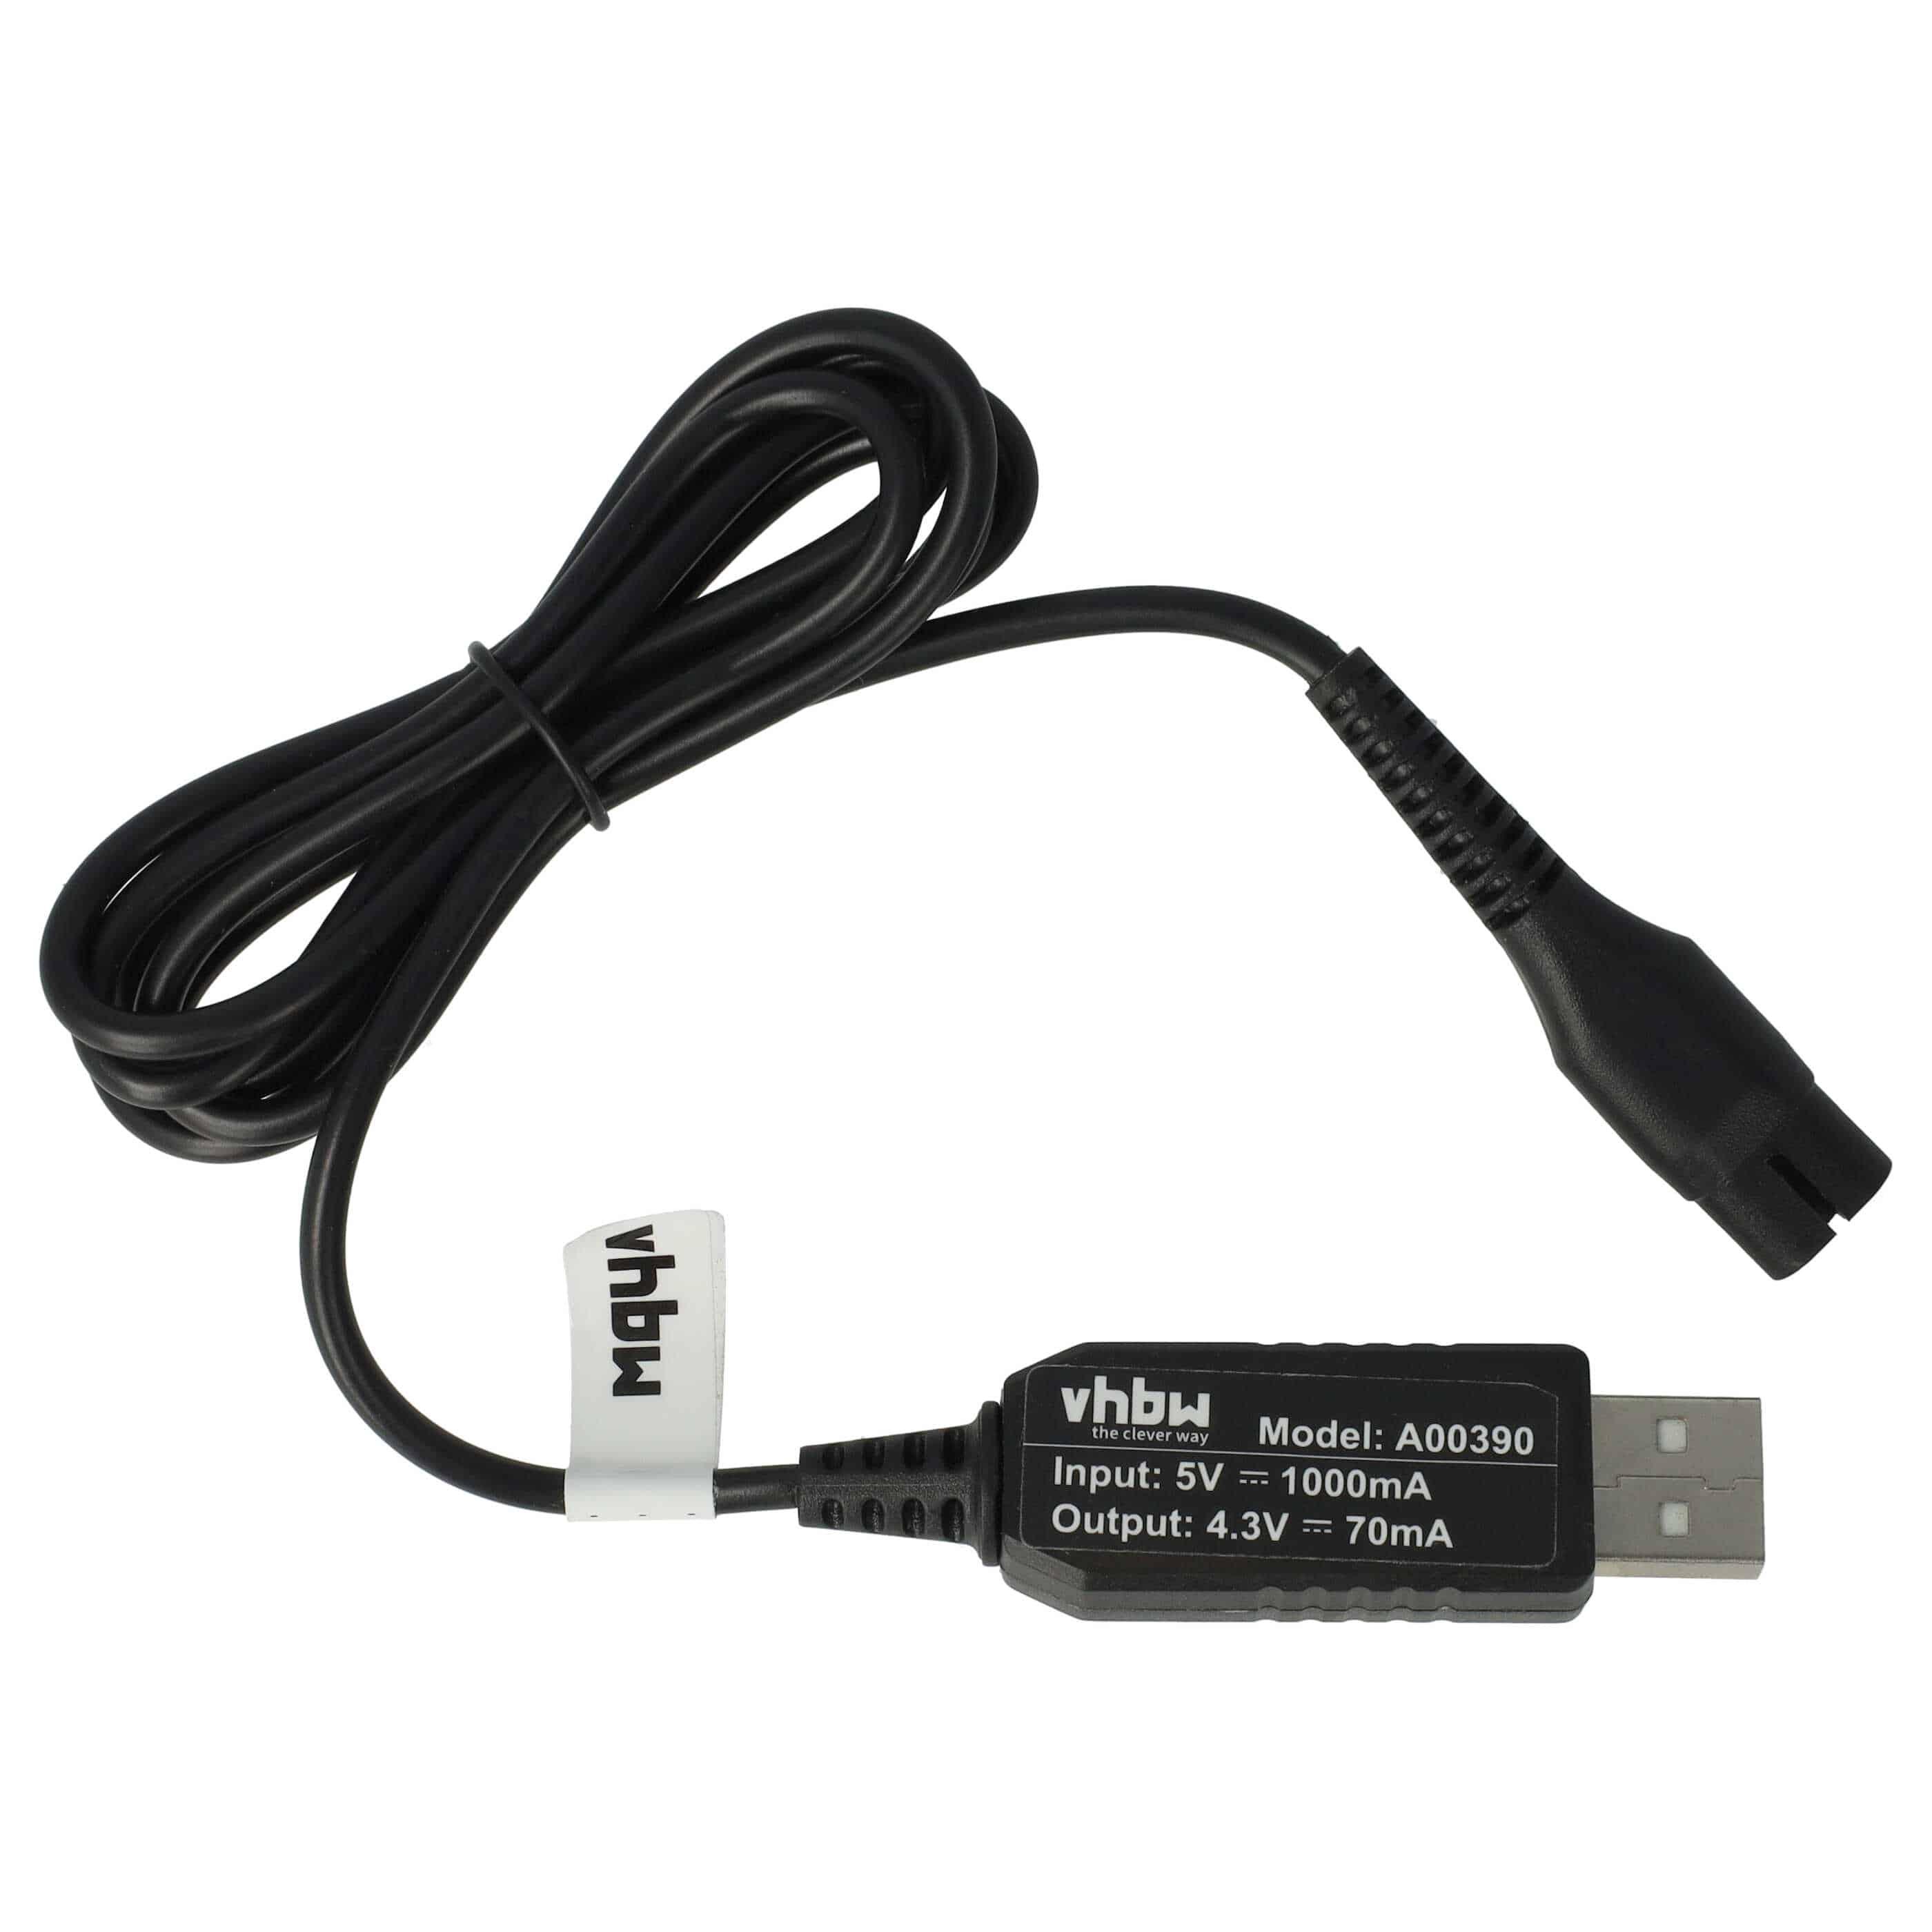 USB Ladekabel passend für Philips S510 Rasierer - 120 cm